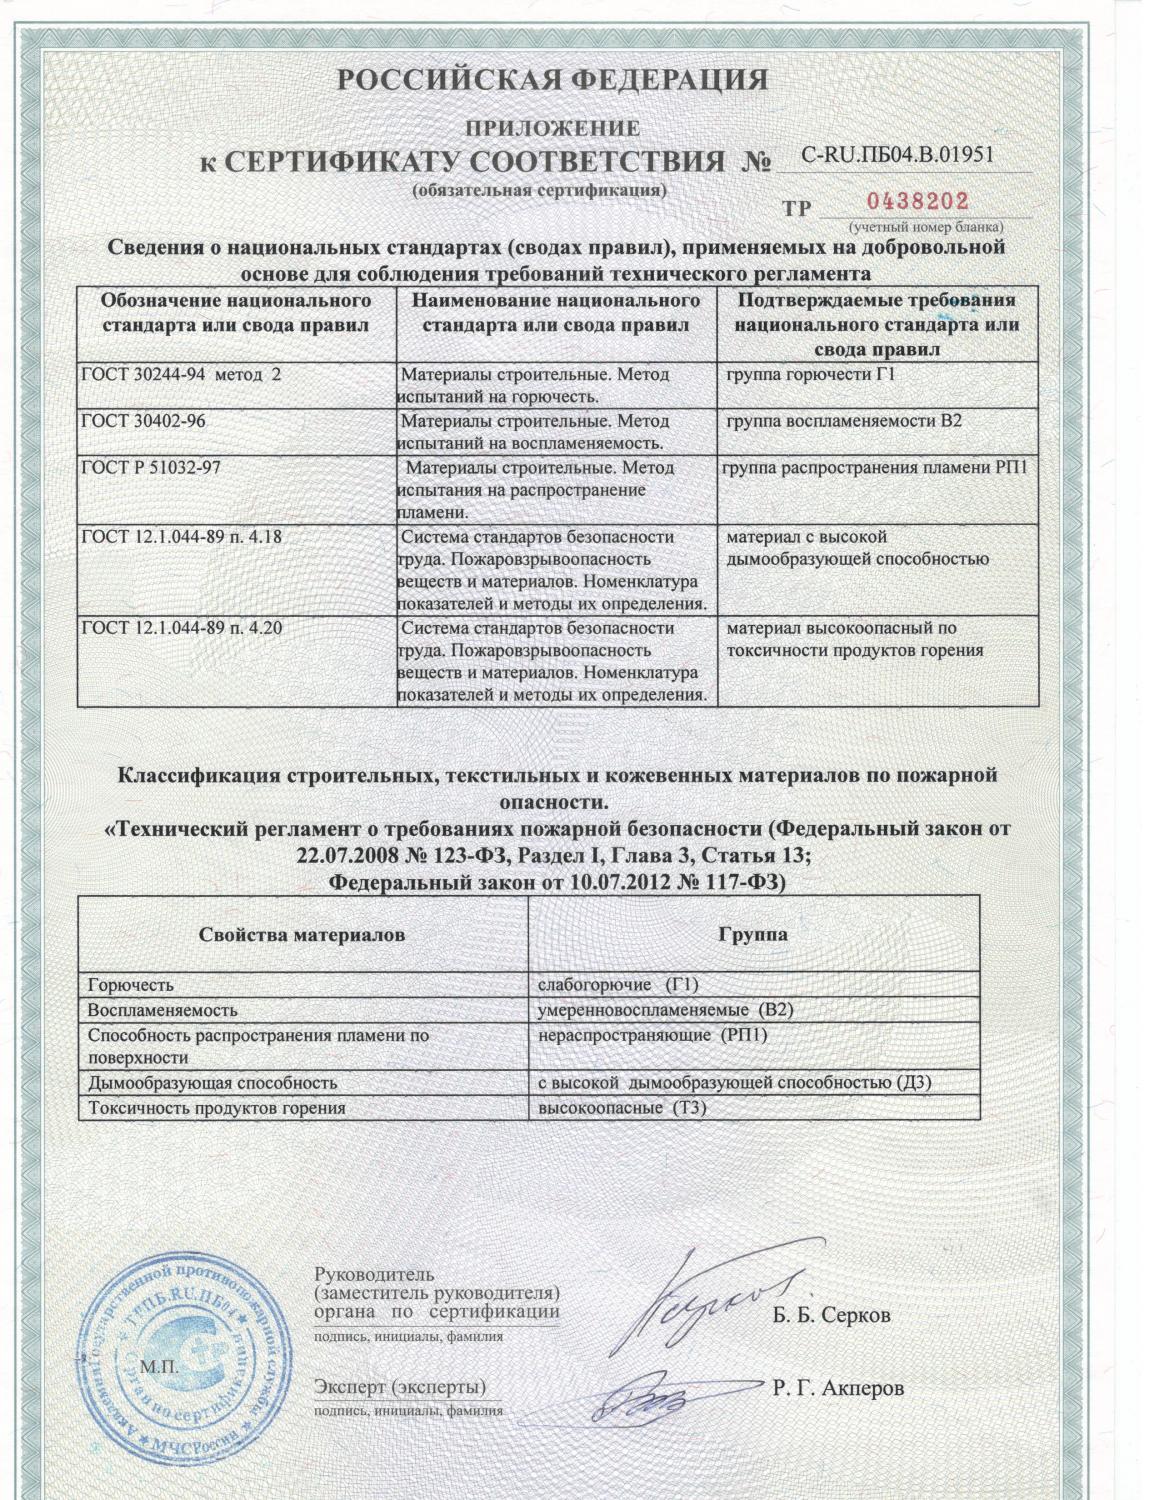 Пожароопасность пвх. Сертификат пожарной безопасности на линолеум группа горючести г1. ПВХ сертификат горючести г1. Горючести г2-г4. МДФ панели сертификат пожарной безопасности км1 2021г.